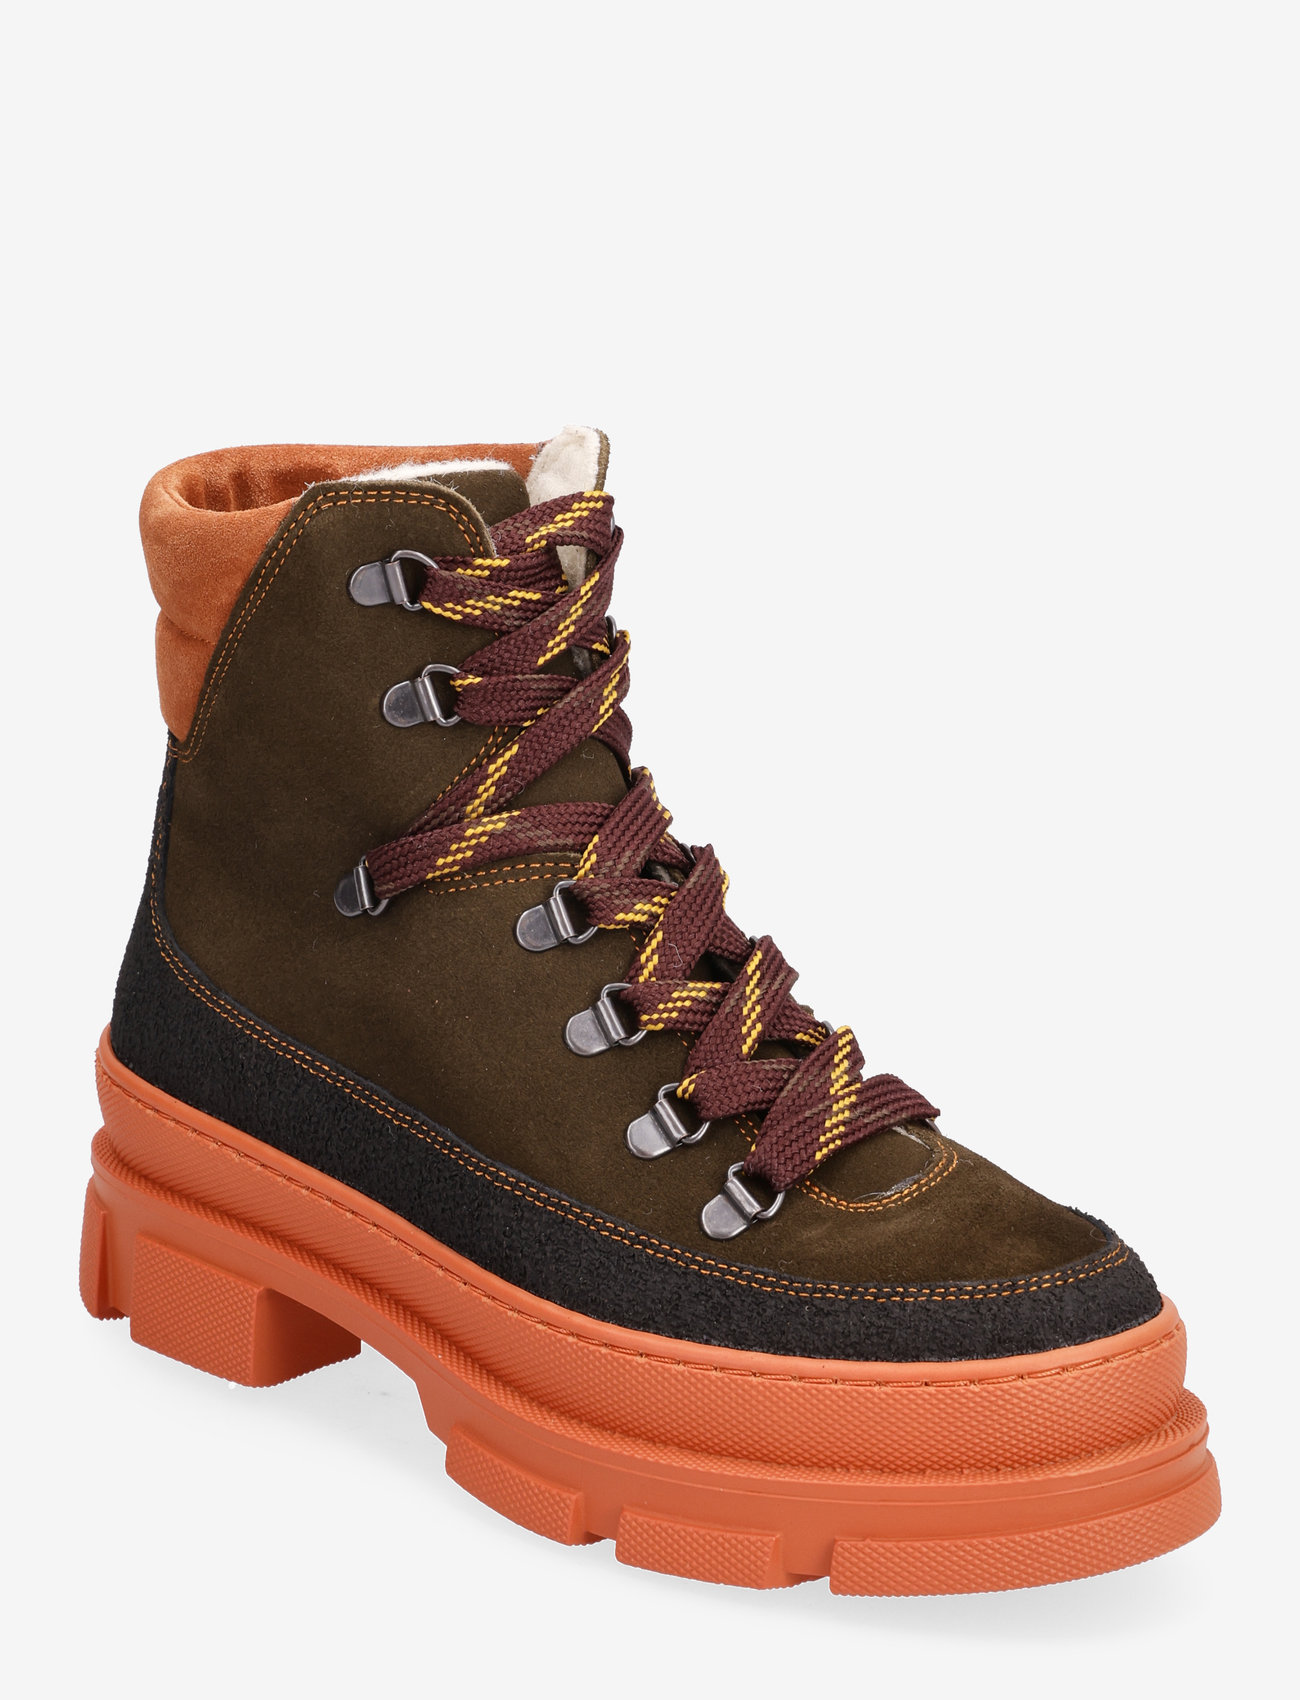 ANGULUS - Boots - flat - geschnürte stiefel - 1321/2214/1754 black/dark gree - 0